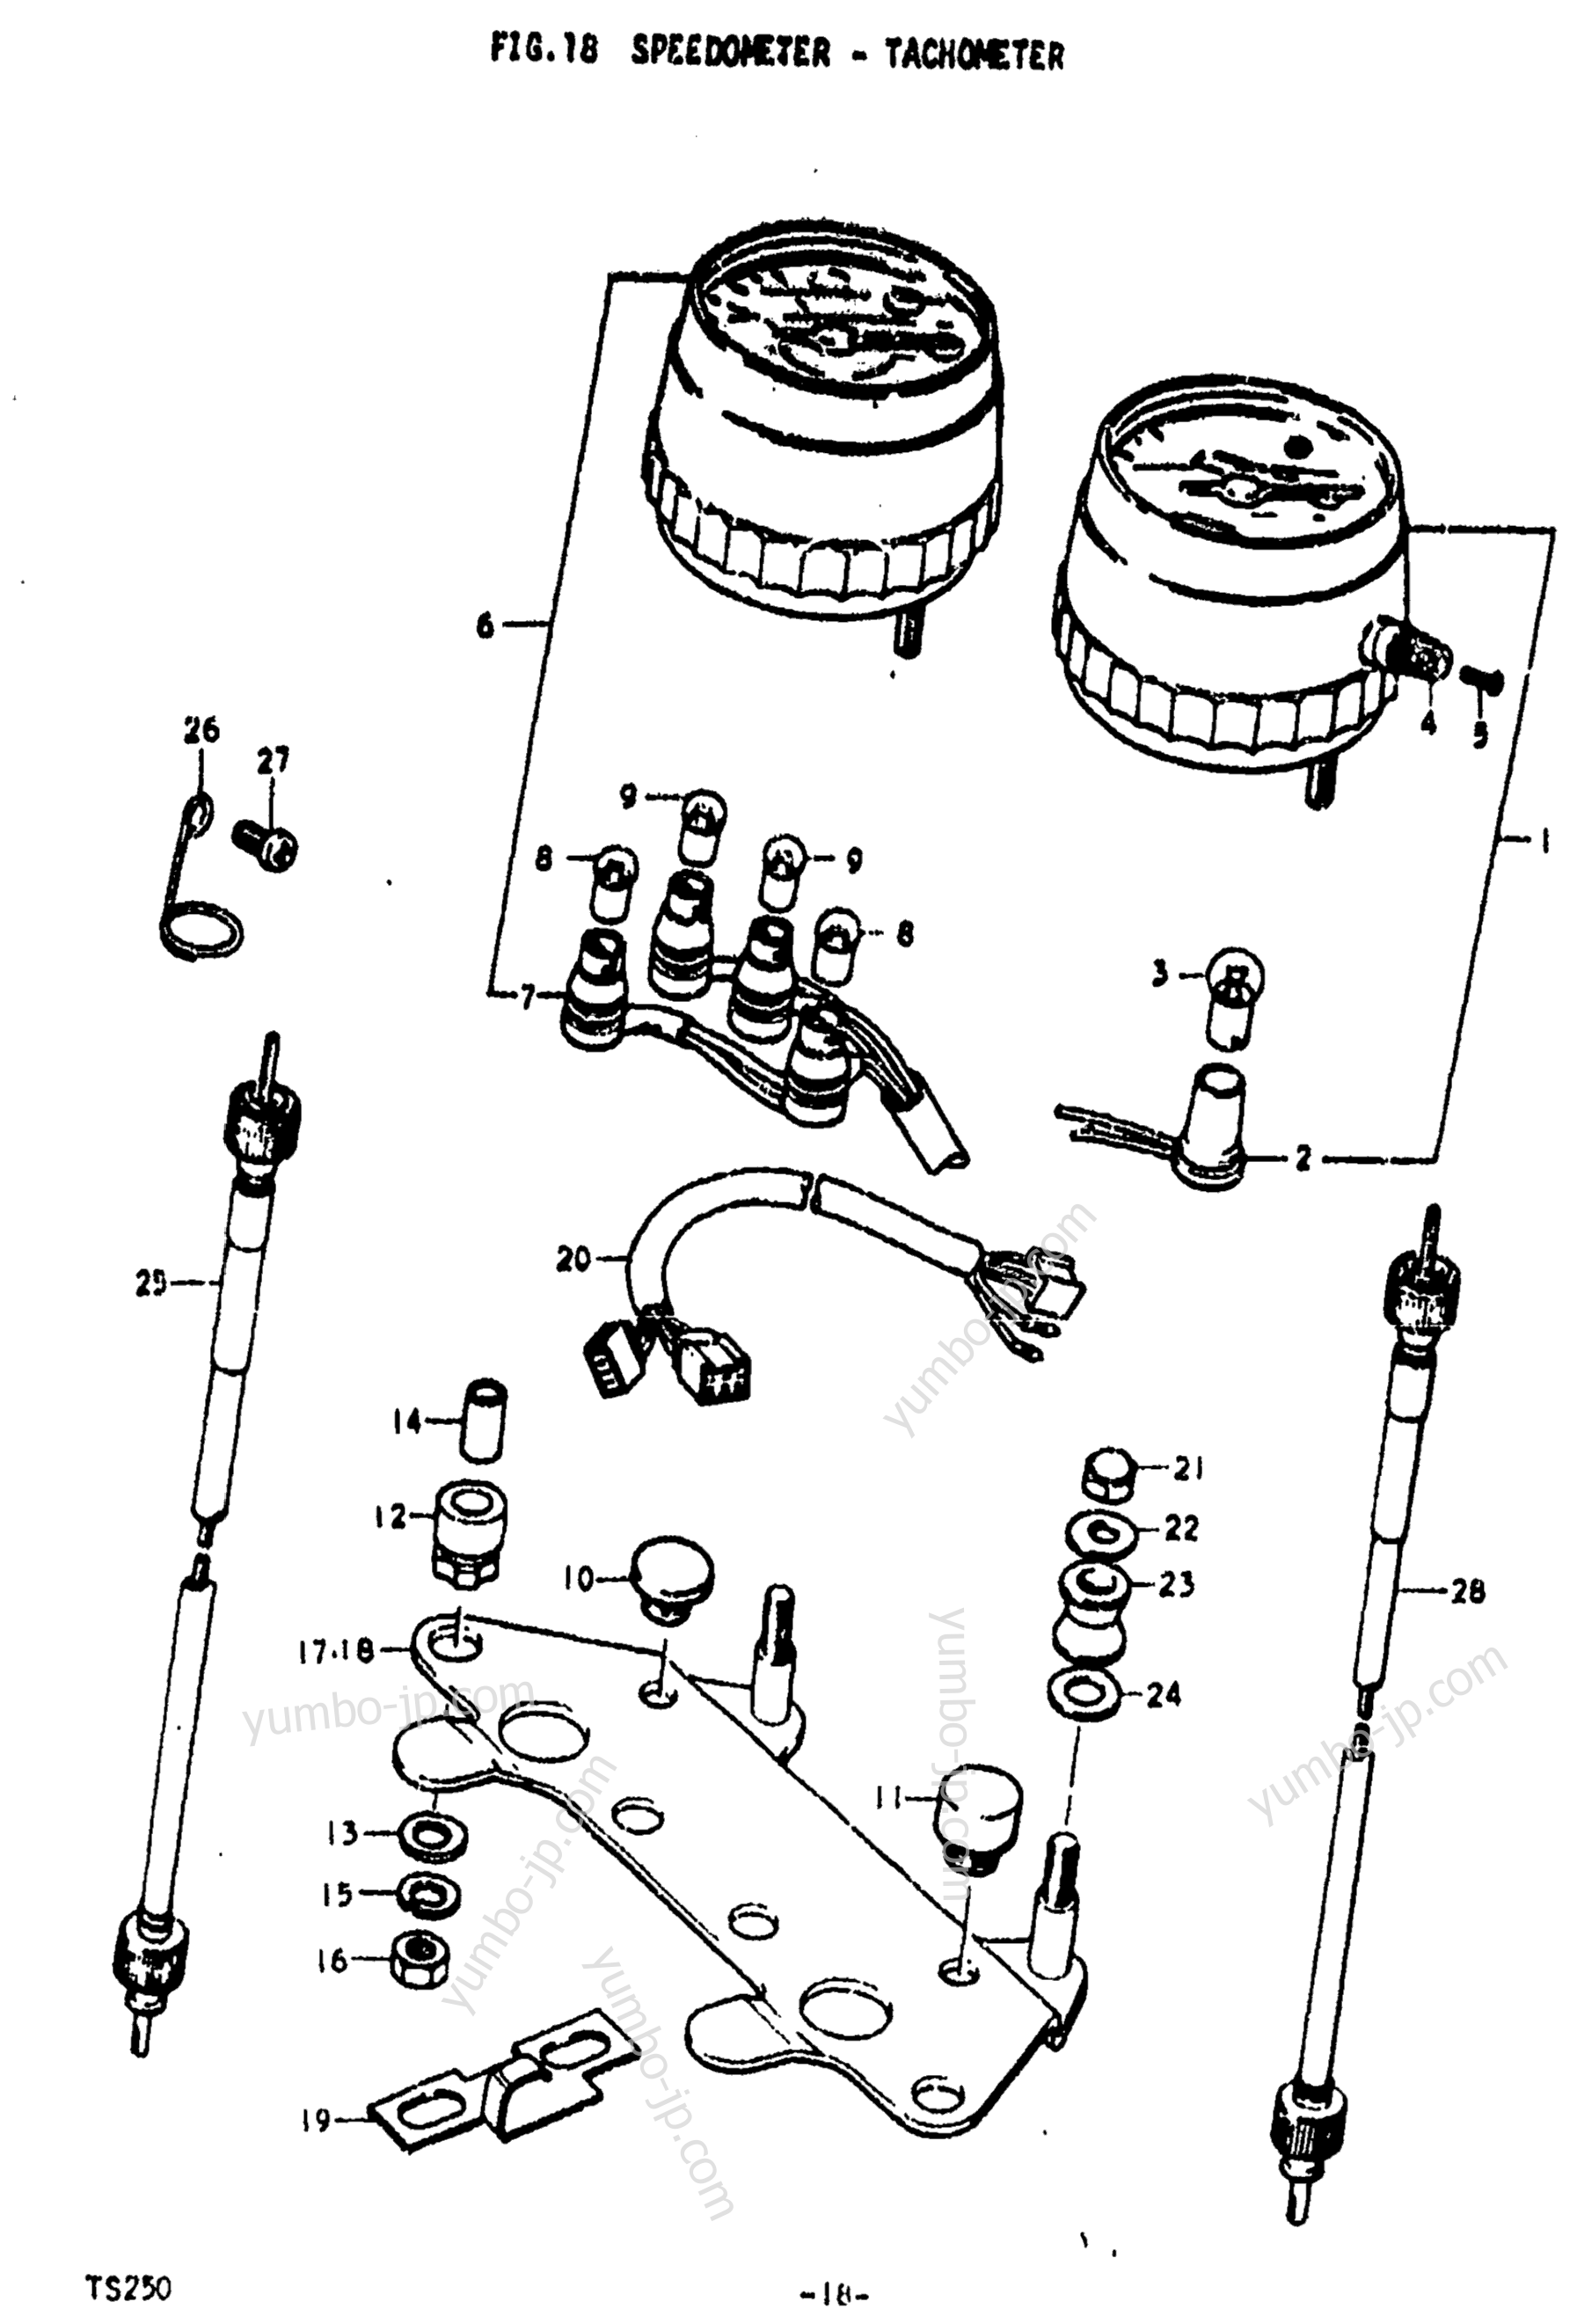 Speedometer - Tachometer for motorcycles SUZUKI TS250 1973 year